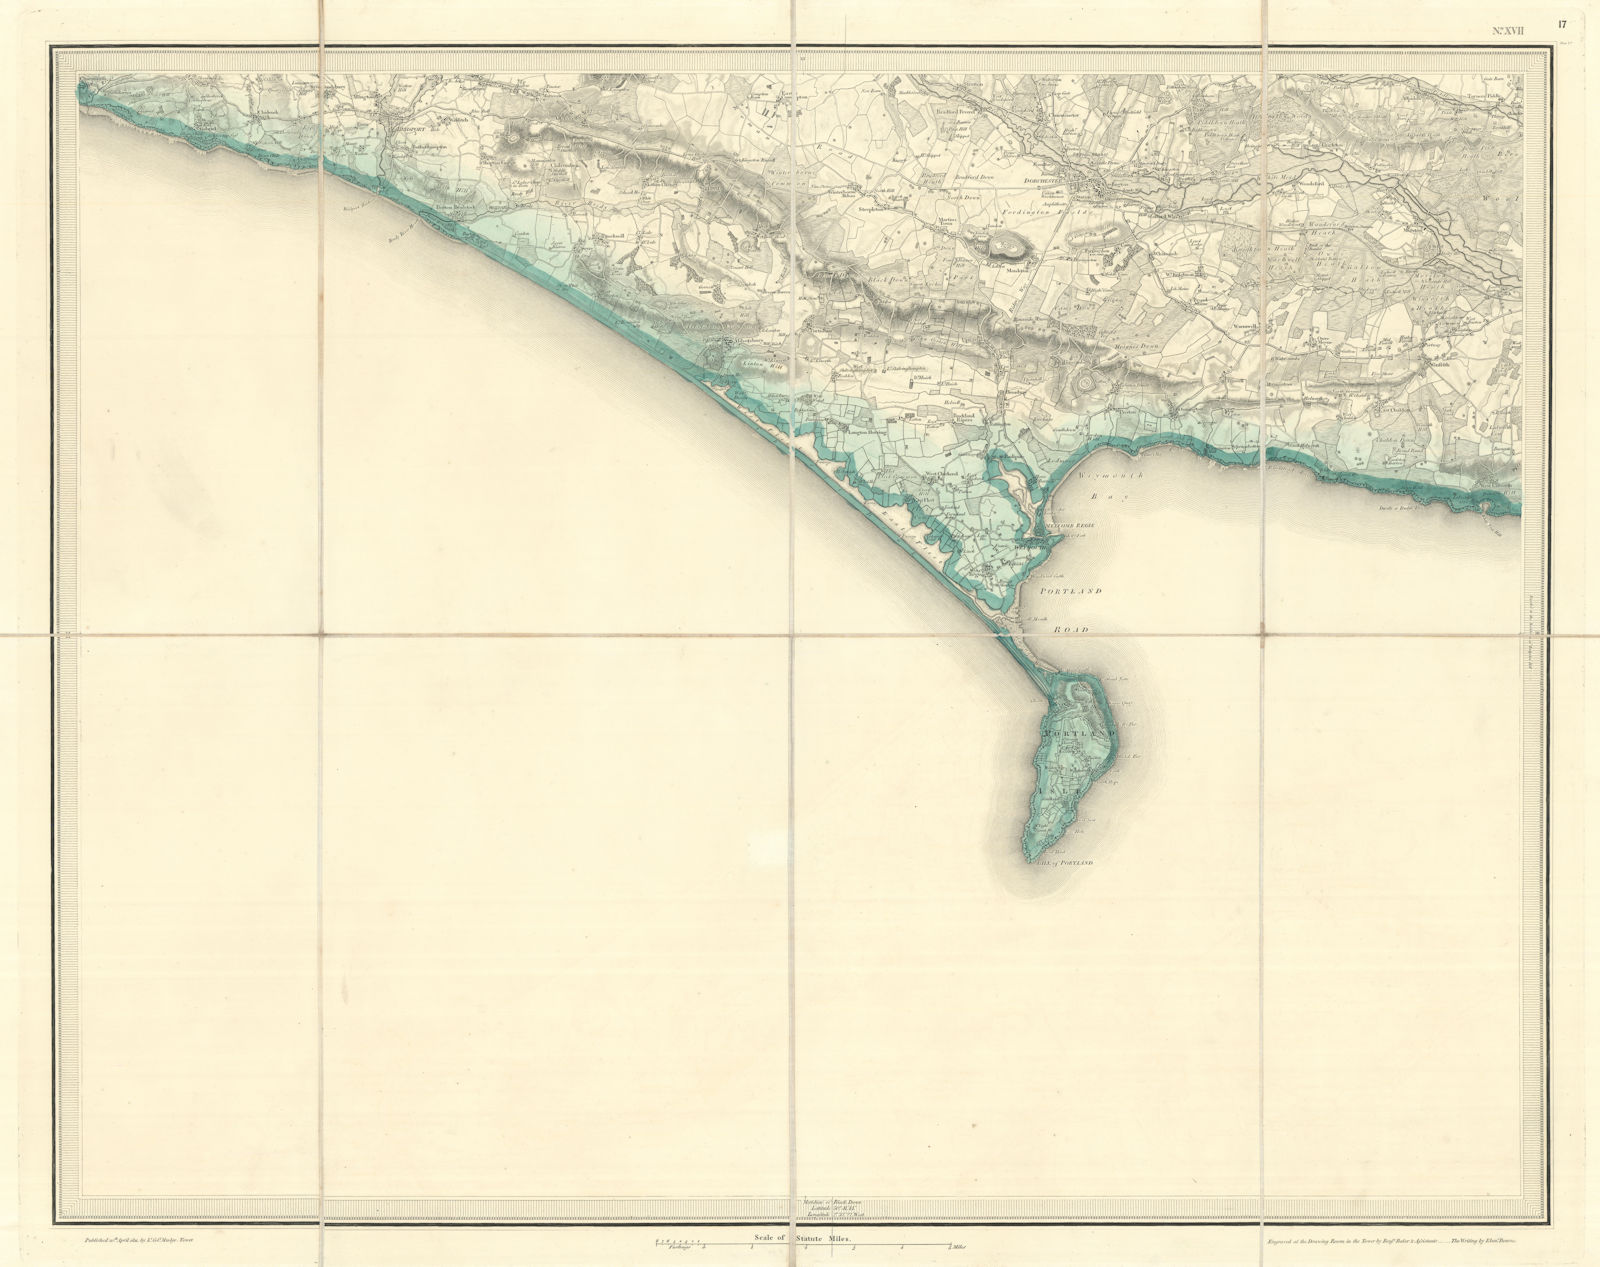 OS #17 Chesil Beach & Portland. Dorchester Weymouth Bridport Dorset 1811 map